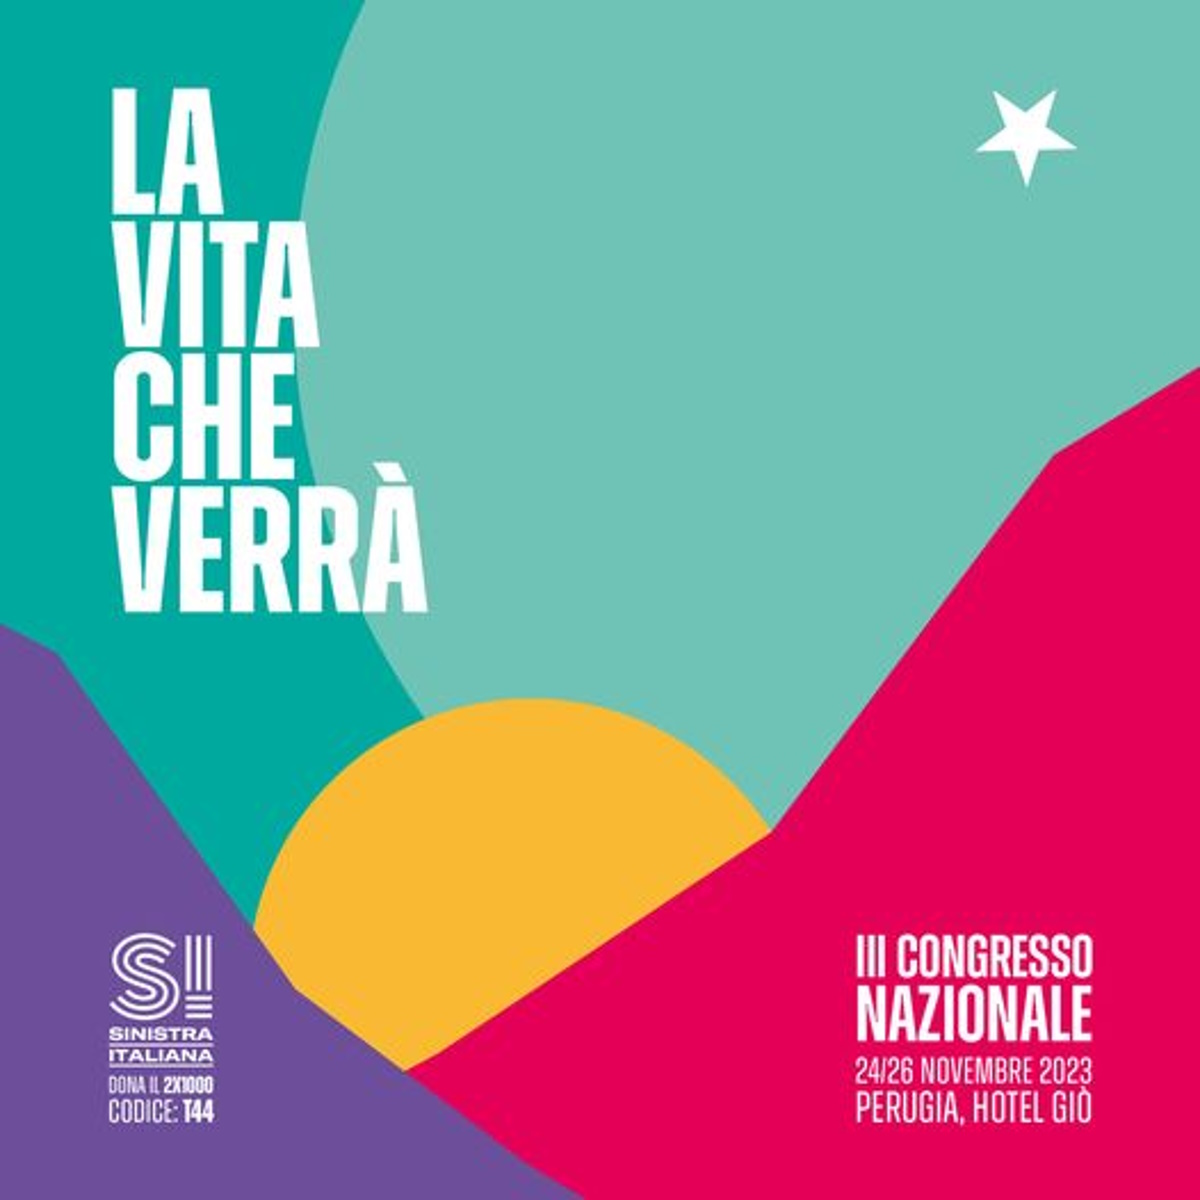 A Perugia, dal 24 al 26 Novembre, Sinistra Italiana terrà il III Congresso Nazionale: LA VITA CHE VERRÀ